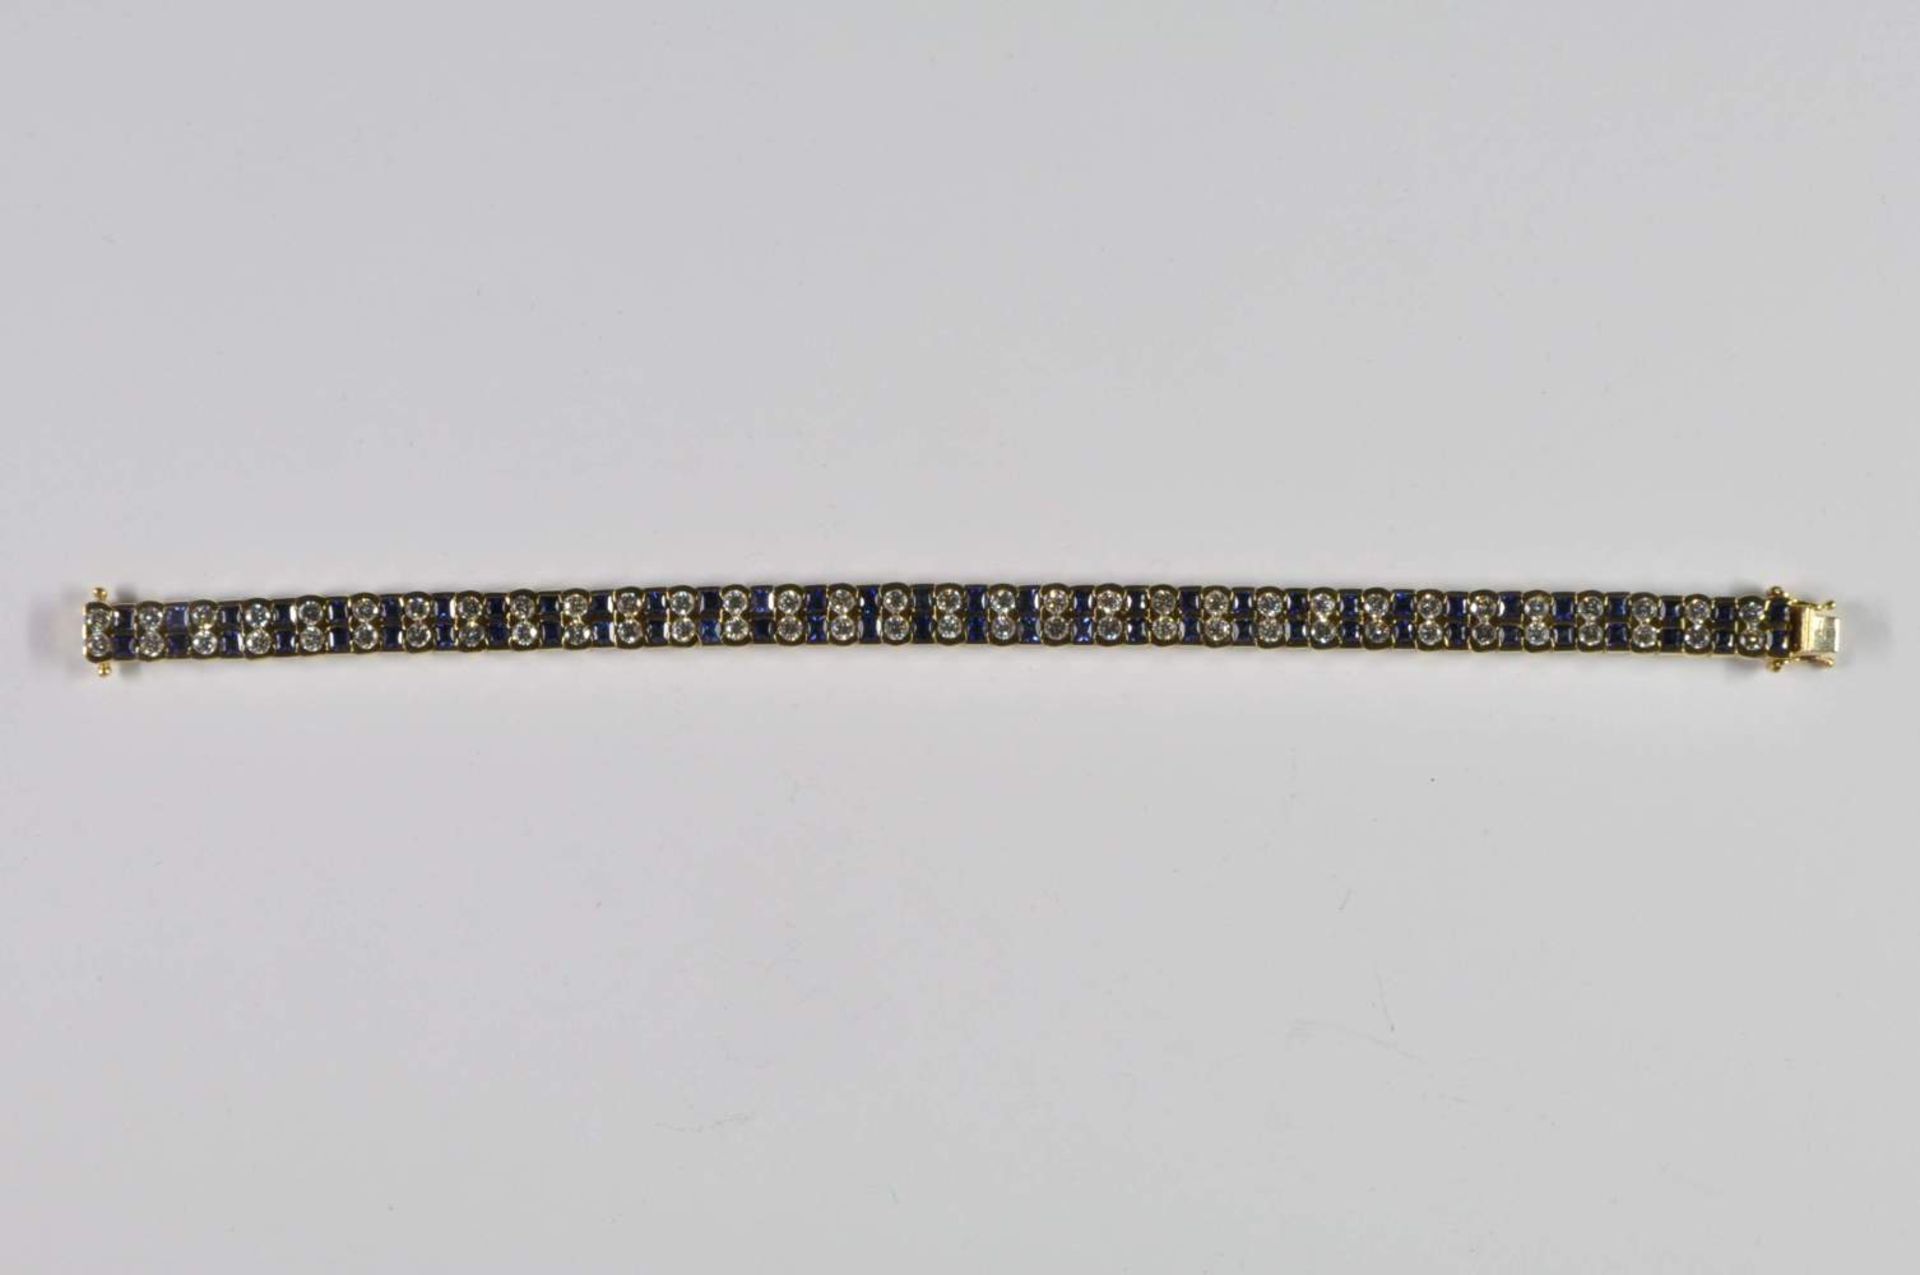 Saphir-Brillant-Armband, 750 Gelbgold, Punze, 66 Brillanten von zus. ca. 3,2ct, 64 Saphiren von zus. - Bild 5 aus 20